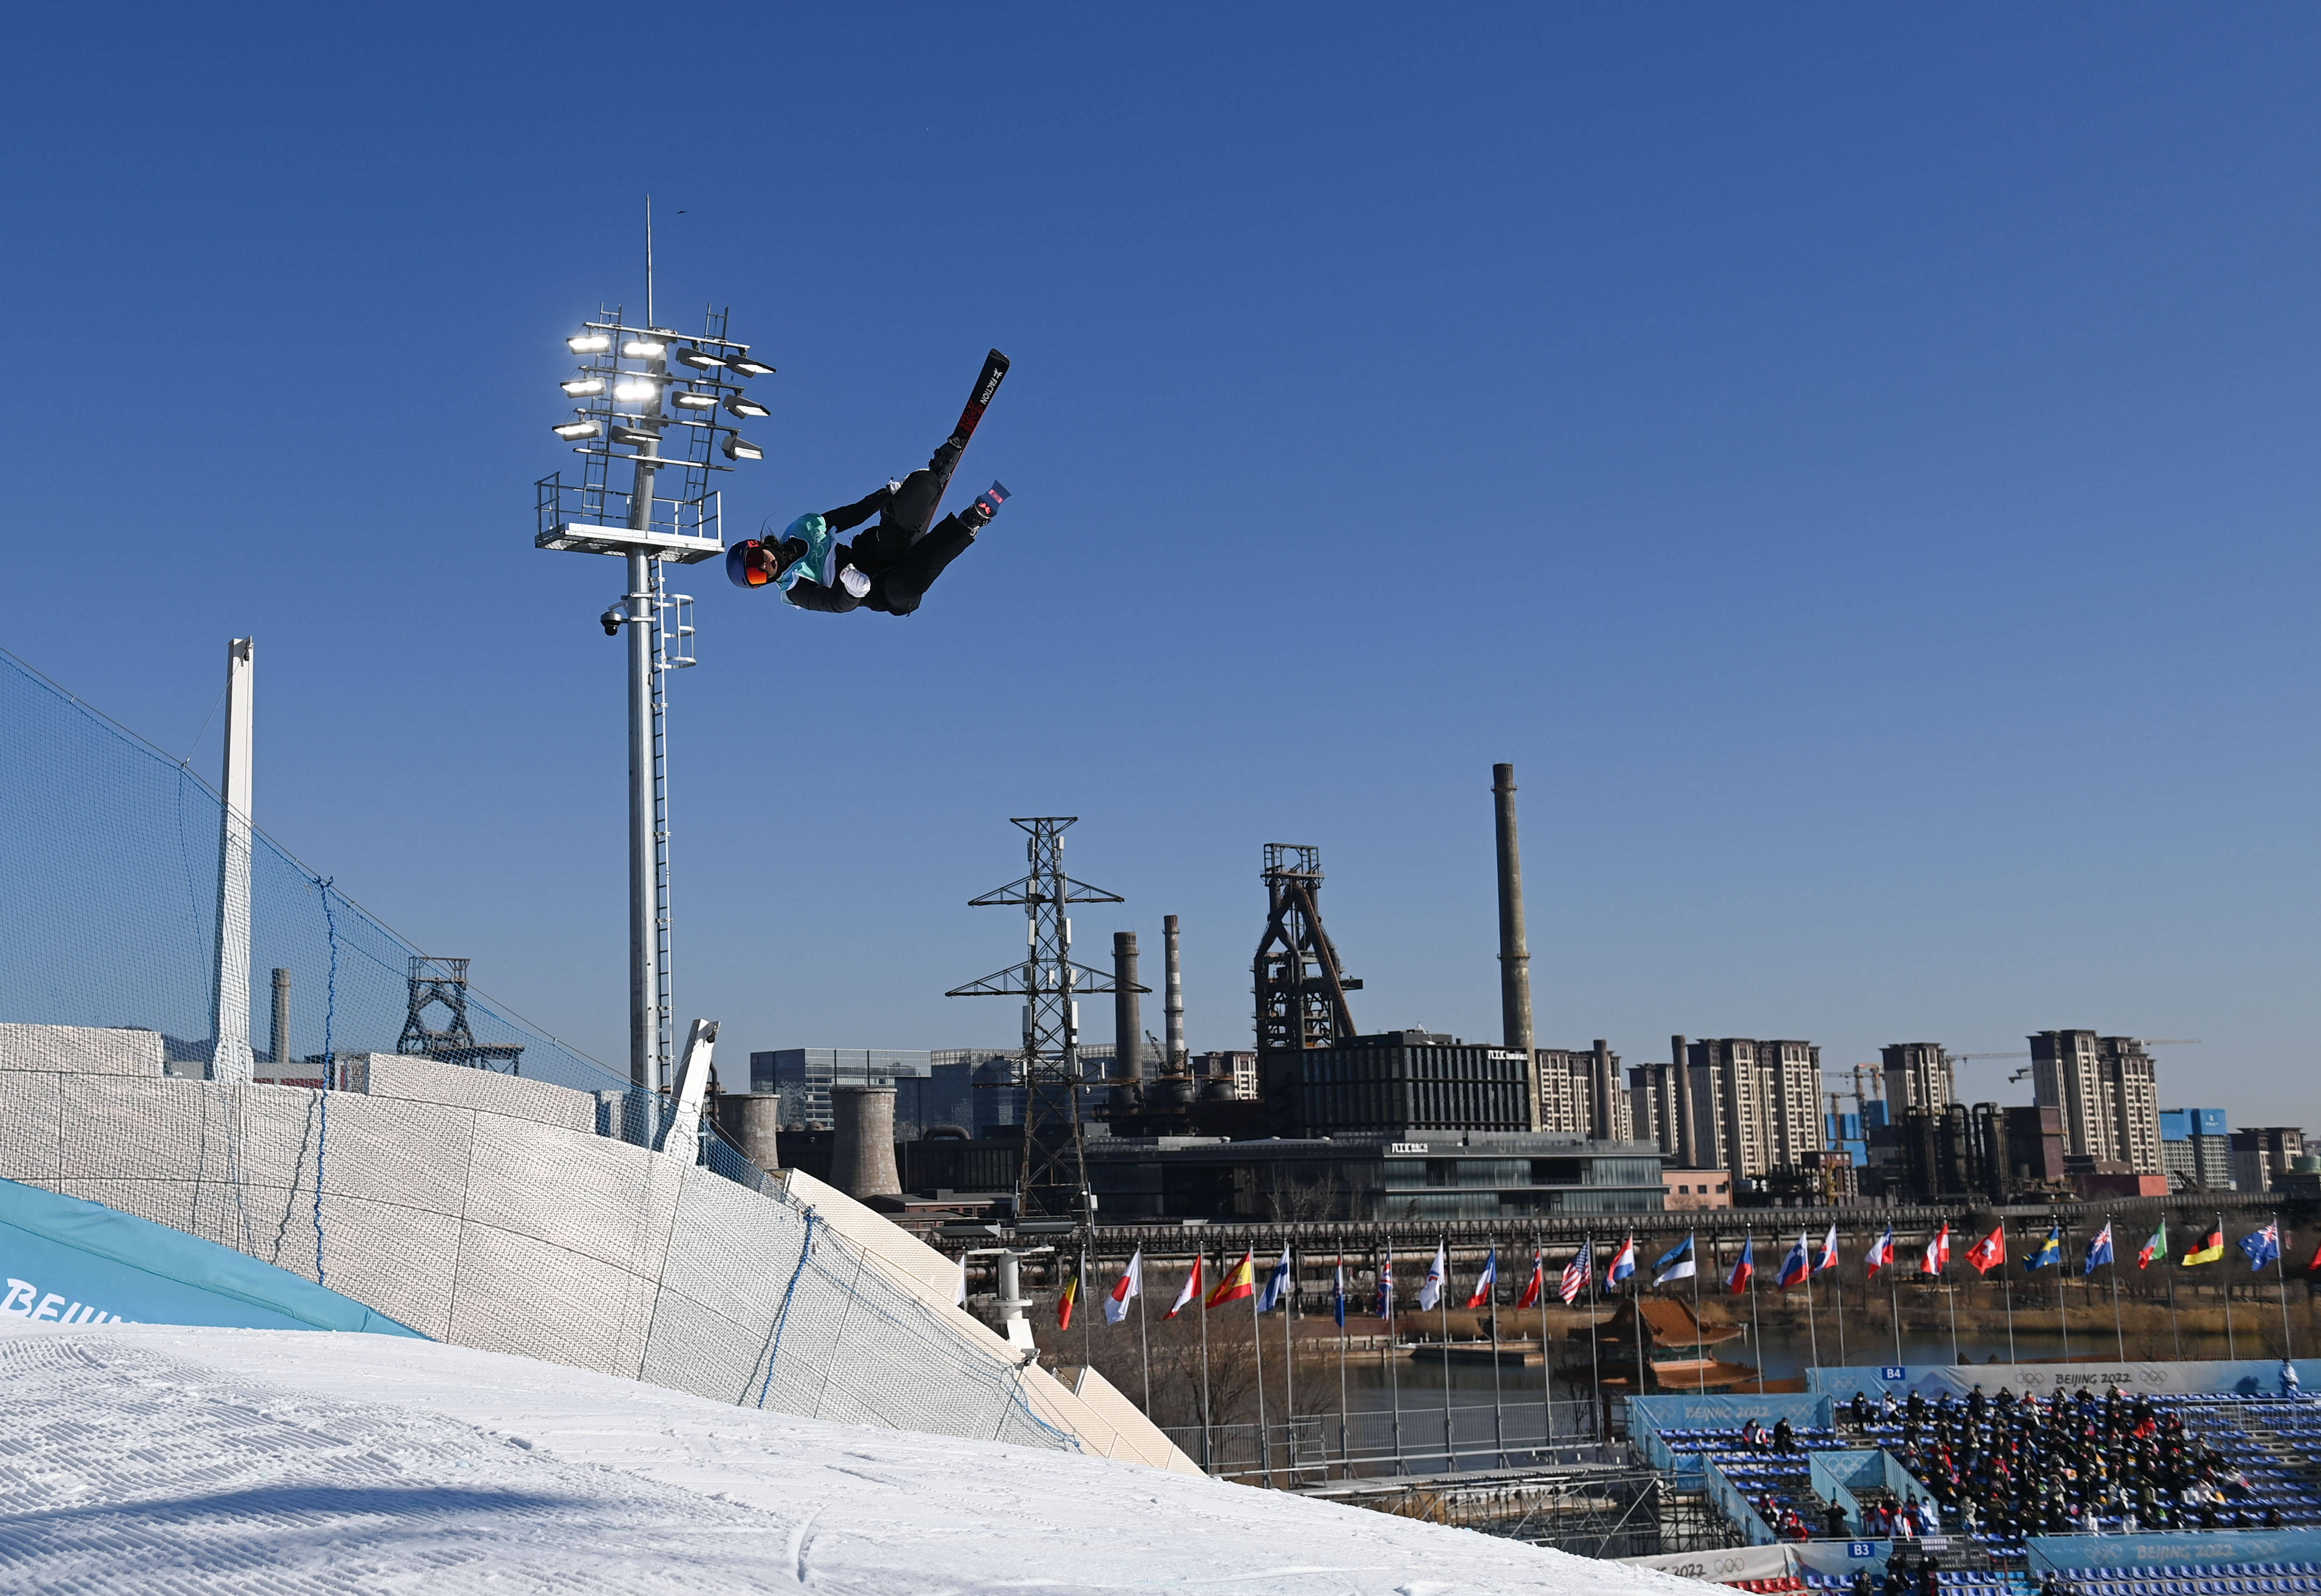 摄新华社记者 兰红光 摄当日,北京2022年冬奥会自由式滑雪女子大跳台